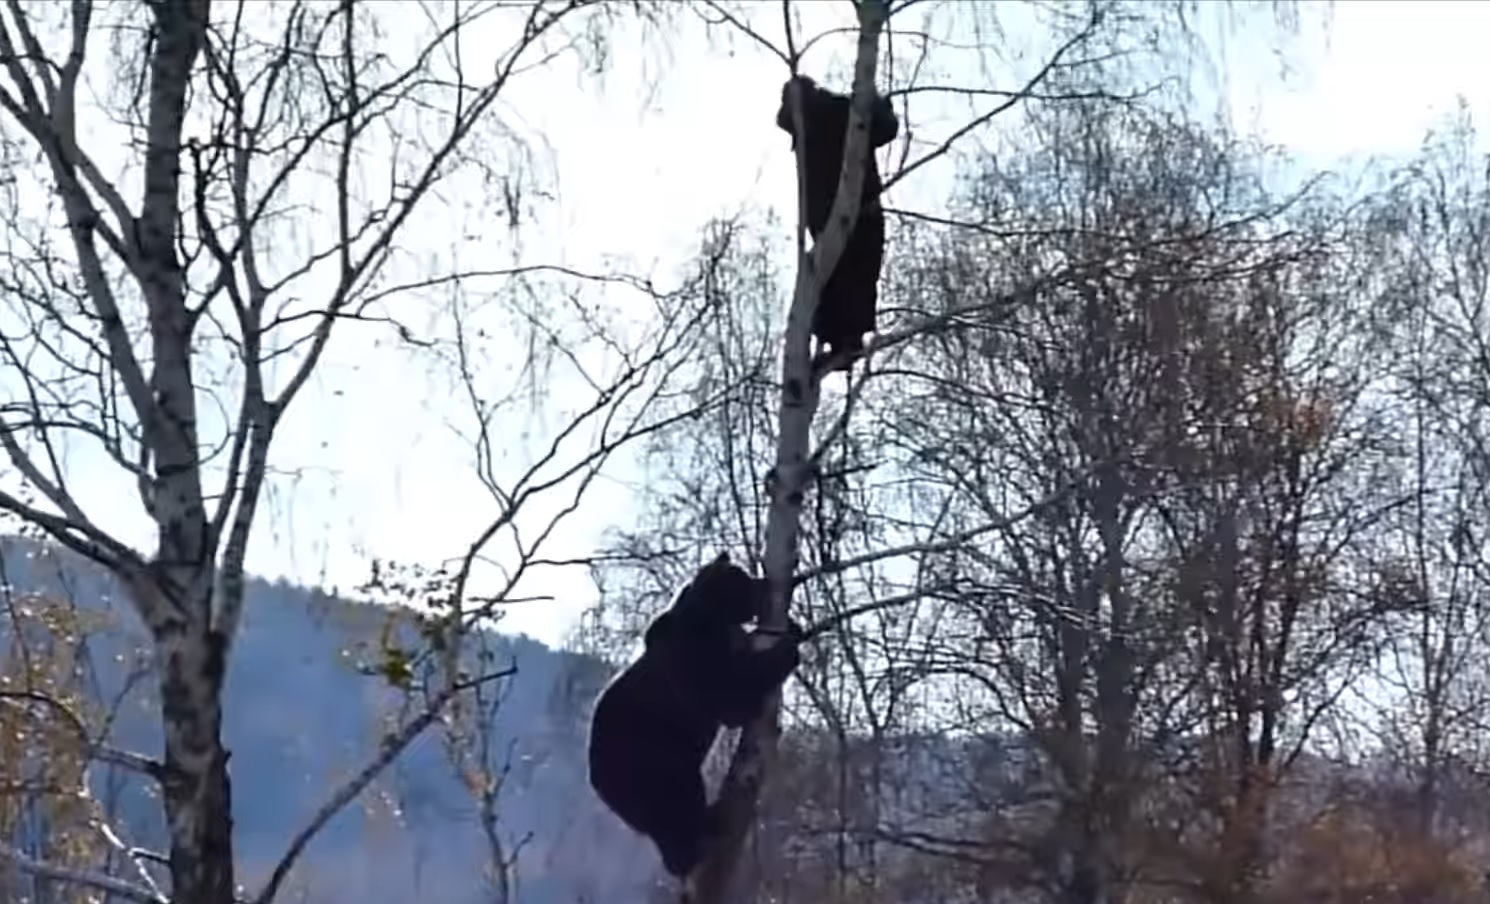 Bear Chasing Man Up A Tree